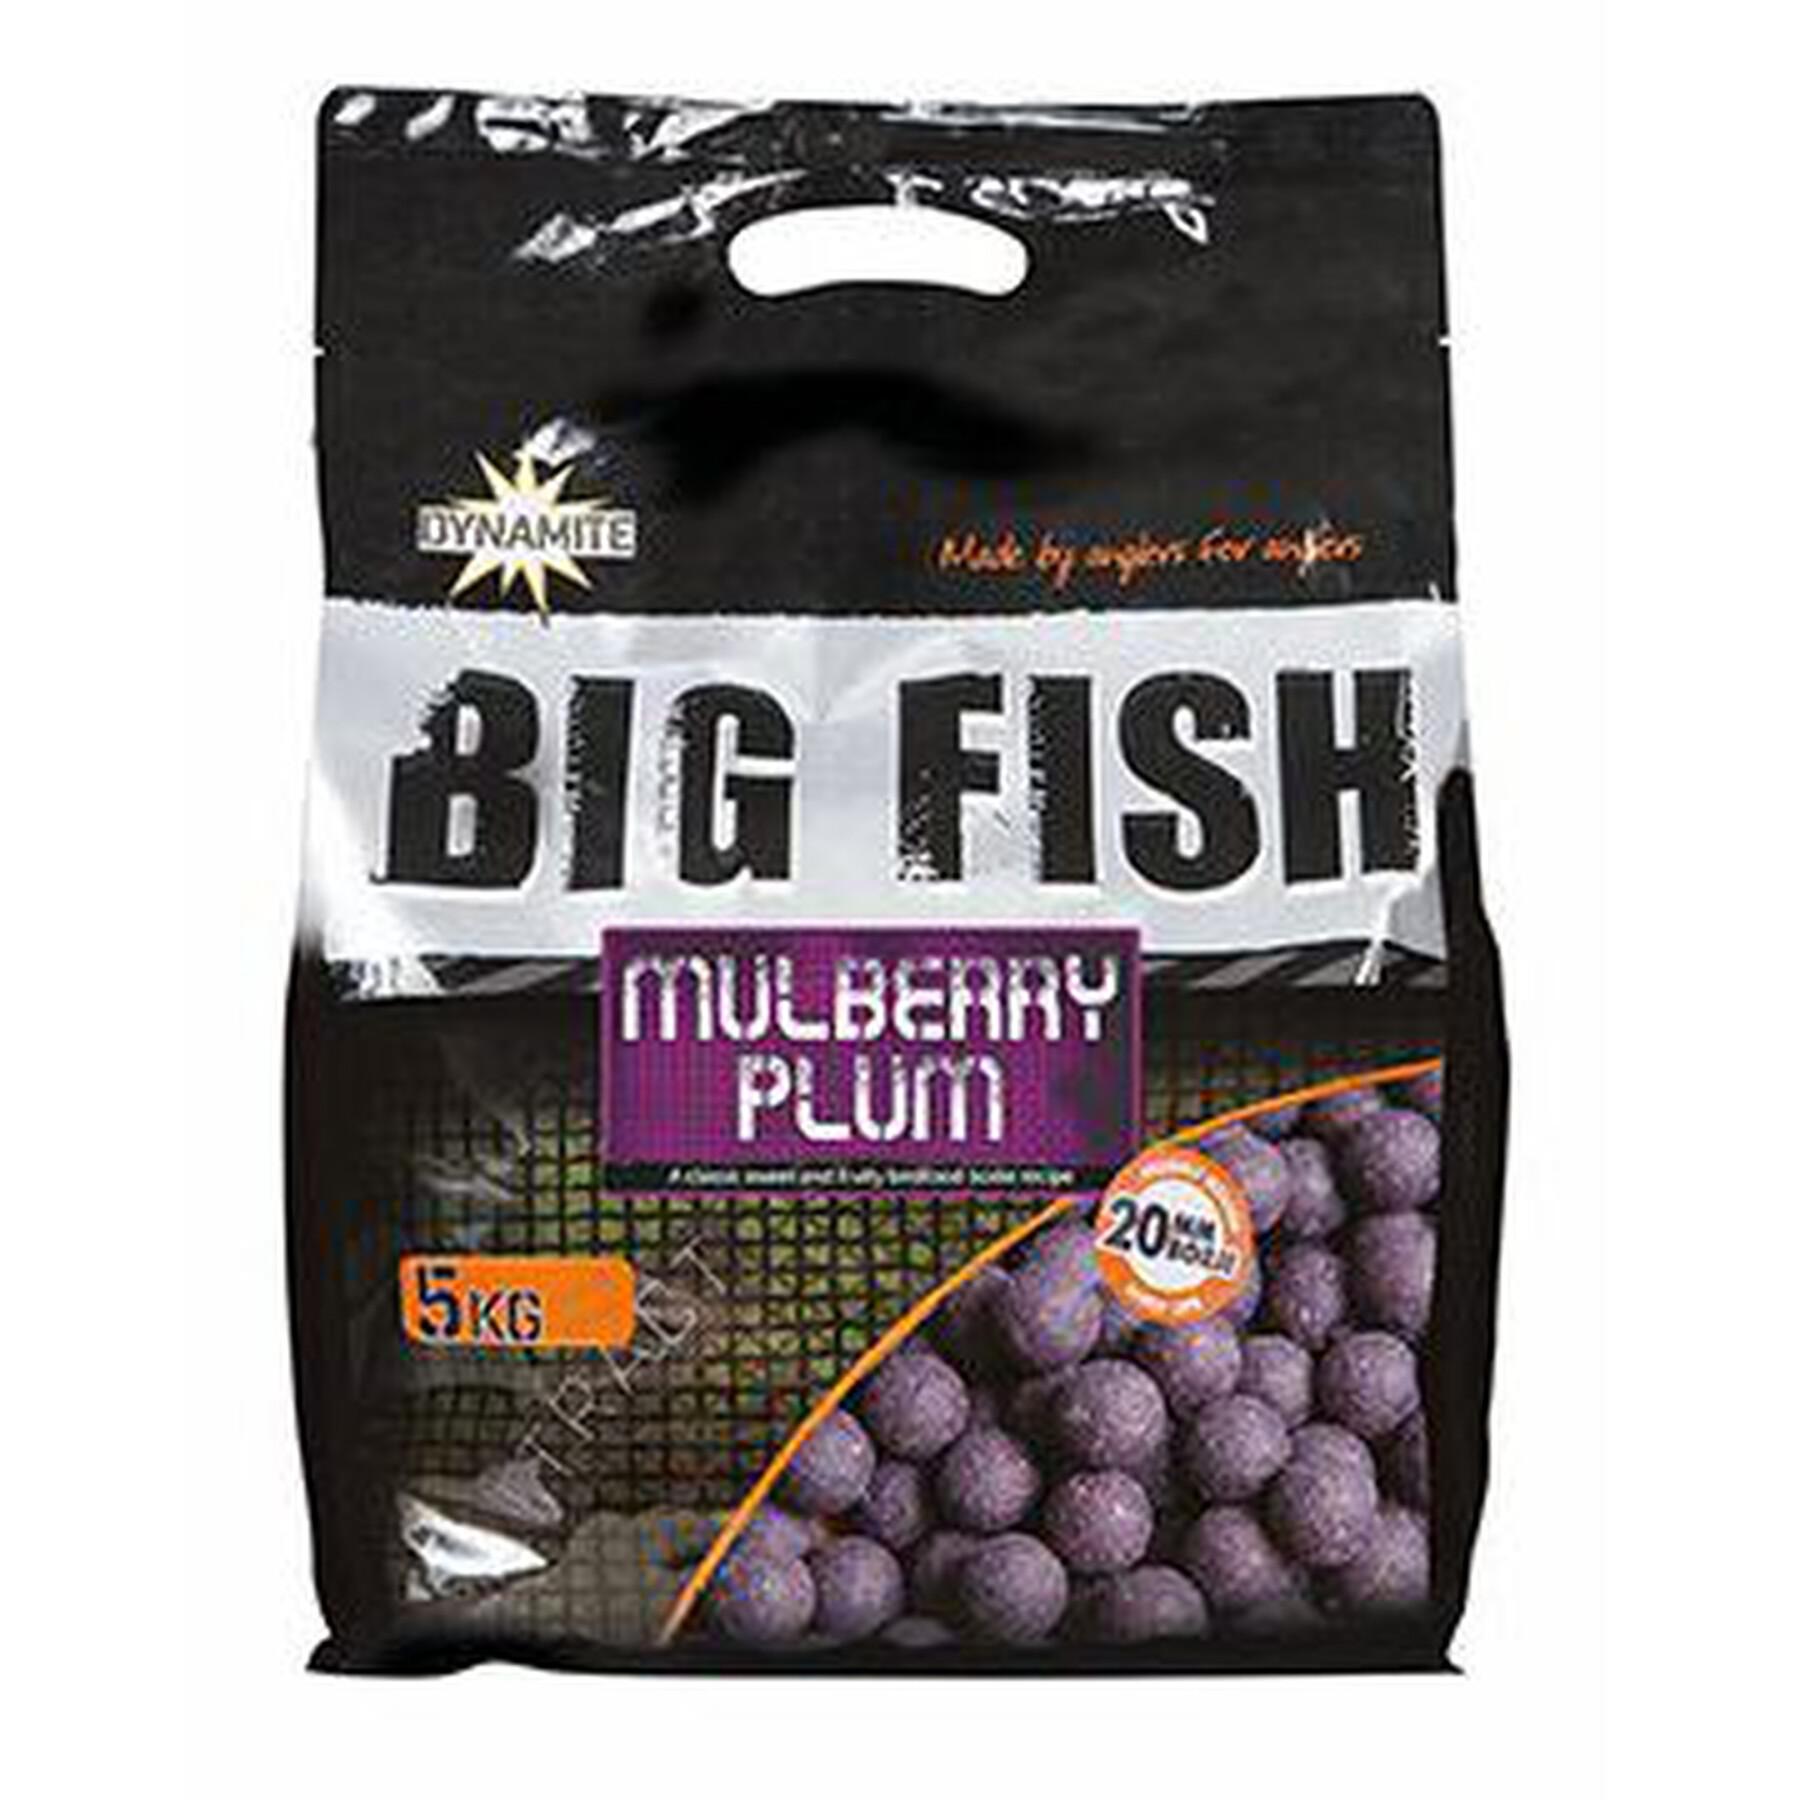 Dichte Boilies Dynamite Baits Mulberry plum 5 kg